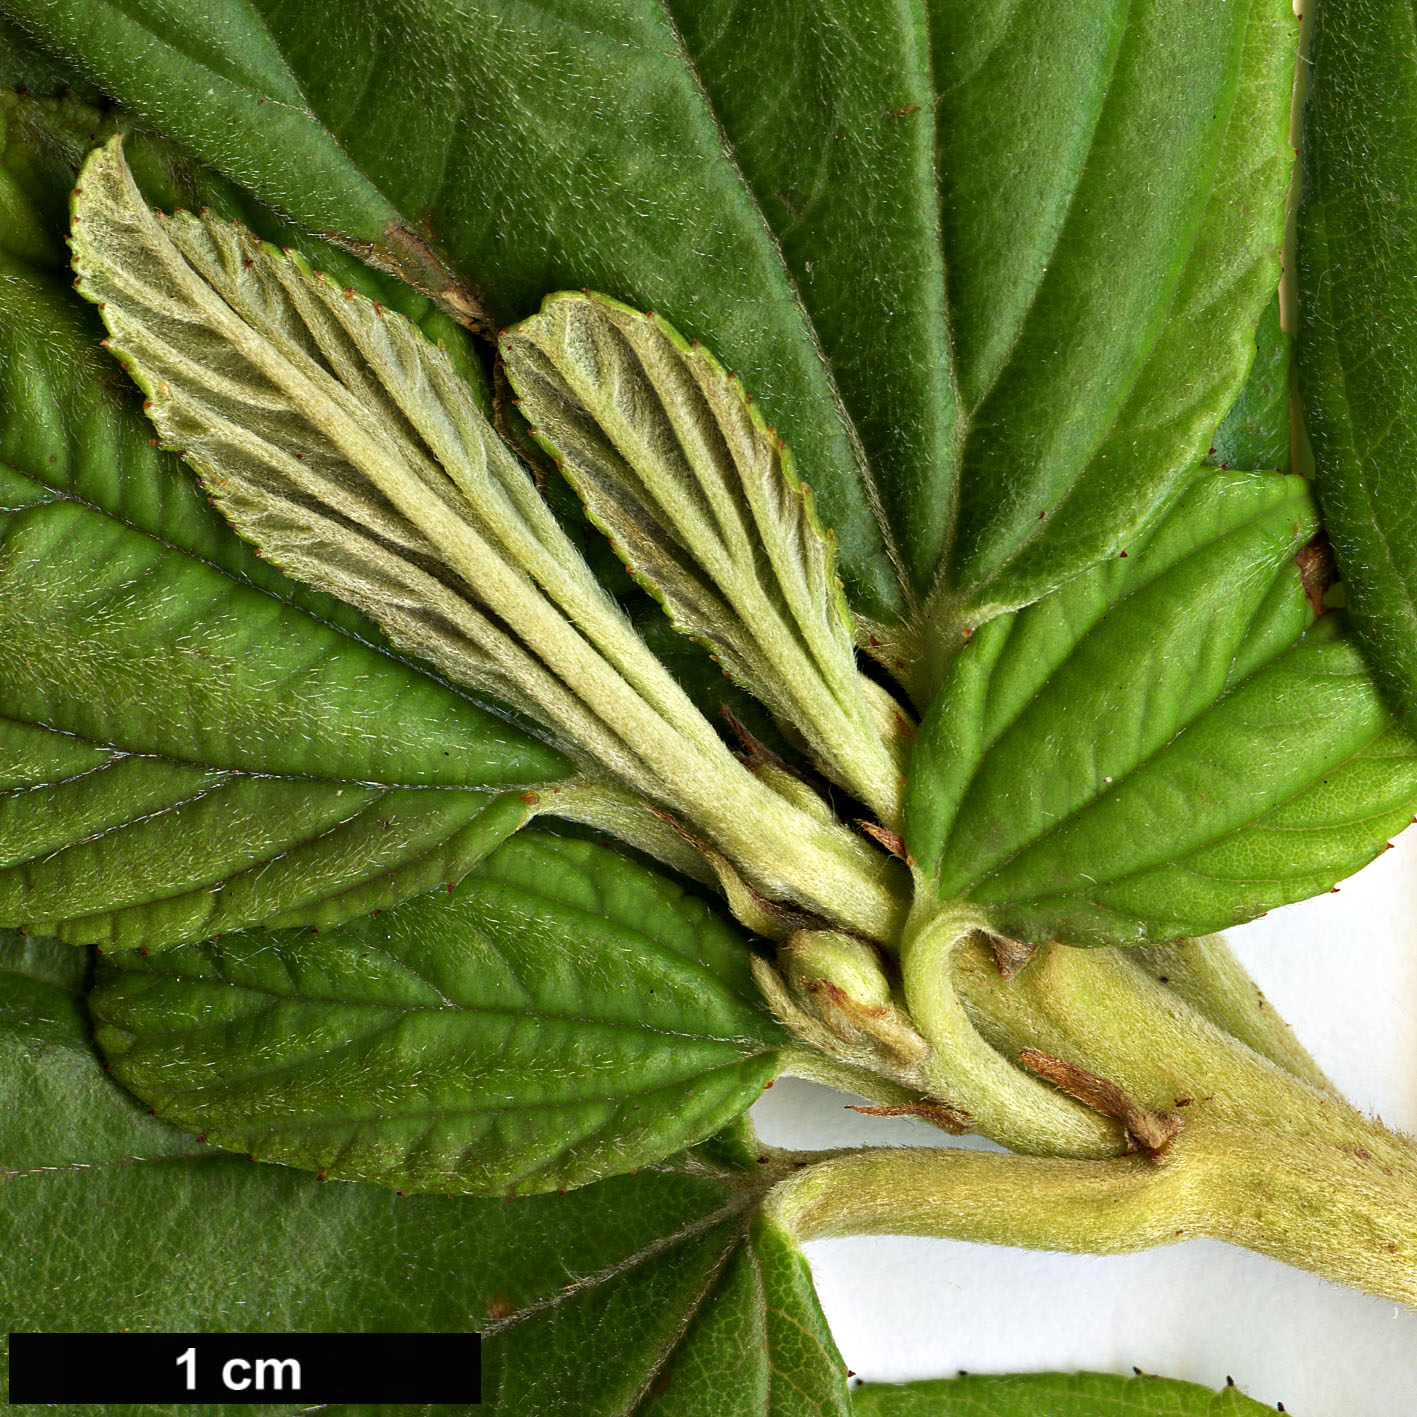 High resolution image: Family: Rhamnaceae - Genus: Ceanothus - Taxon: arboreus - SpeciesSub: ’Trewithen Blue’